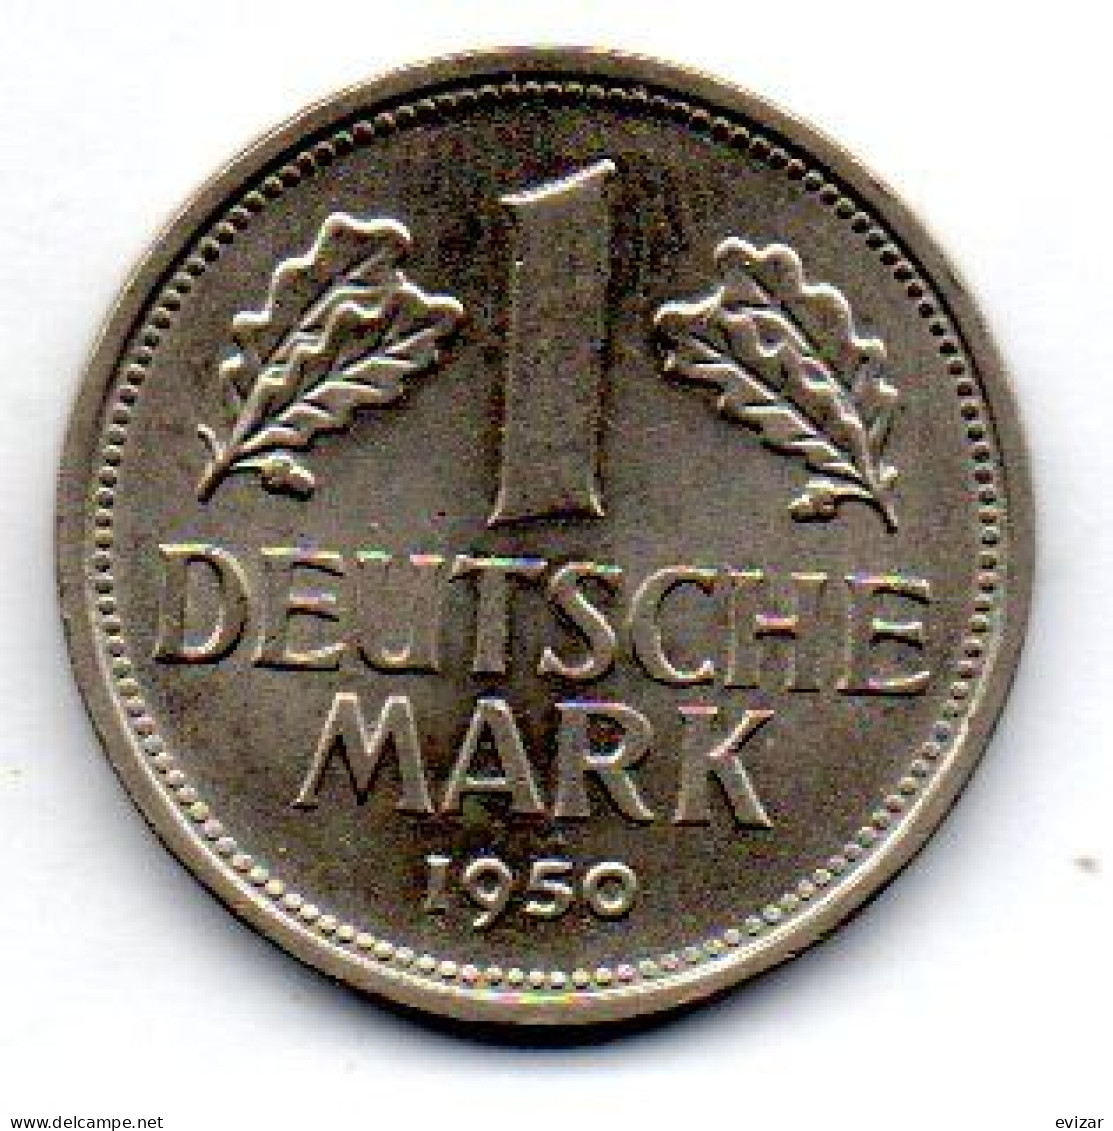 GERMANY - FEDERAL REPUBLIC, 1 Mark, Copper-Nickel, Year 1950-G, KM # 110 - 1 Mark